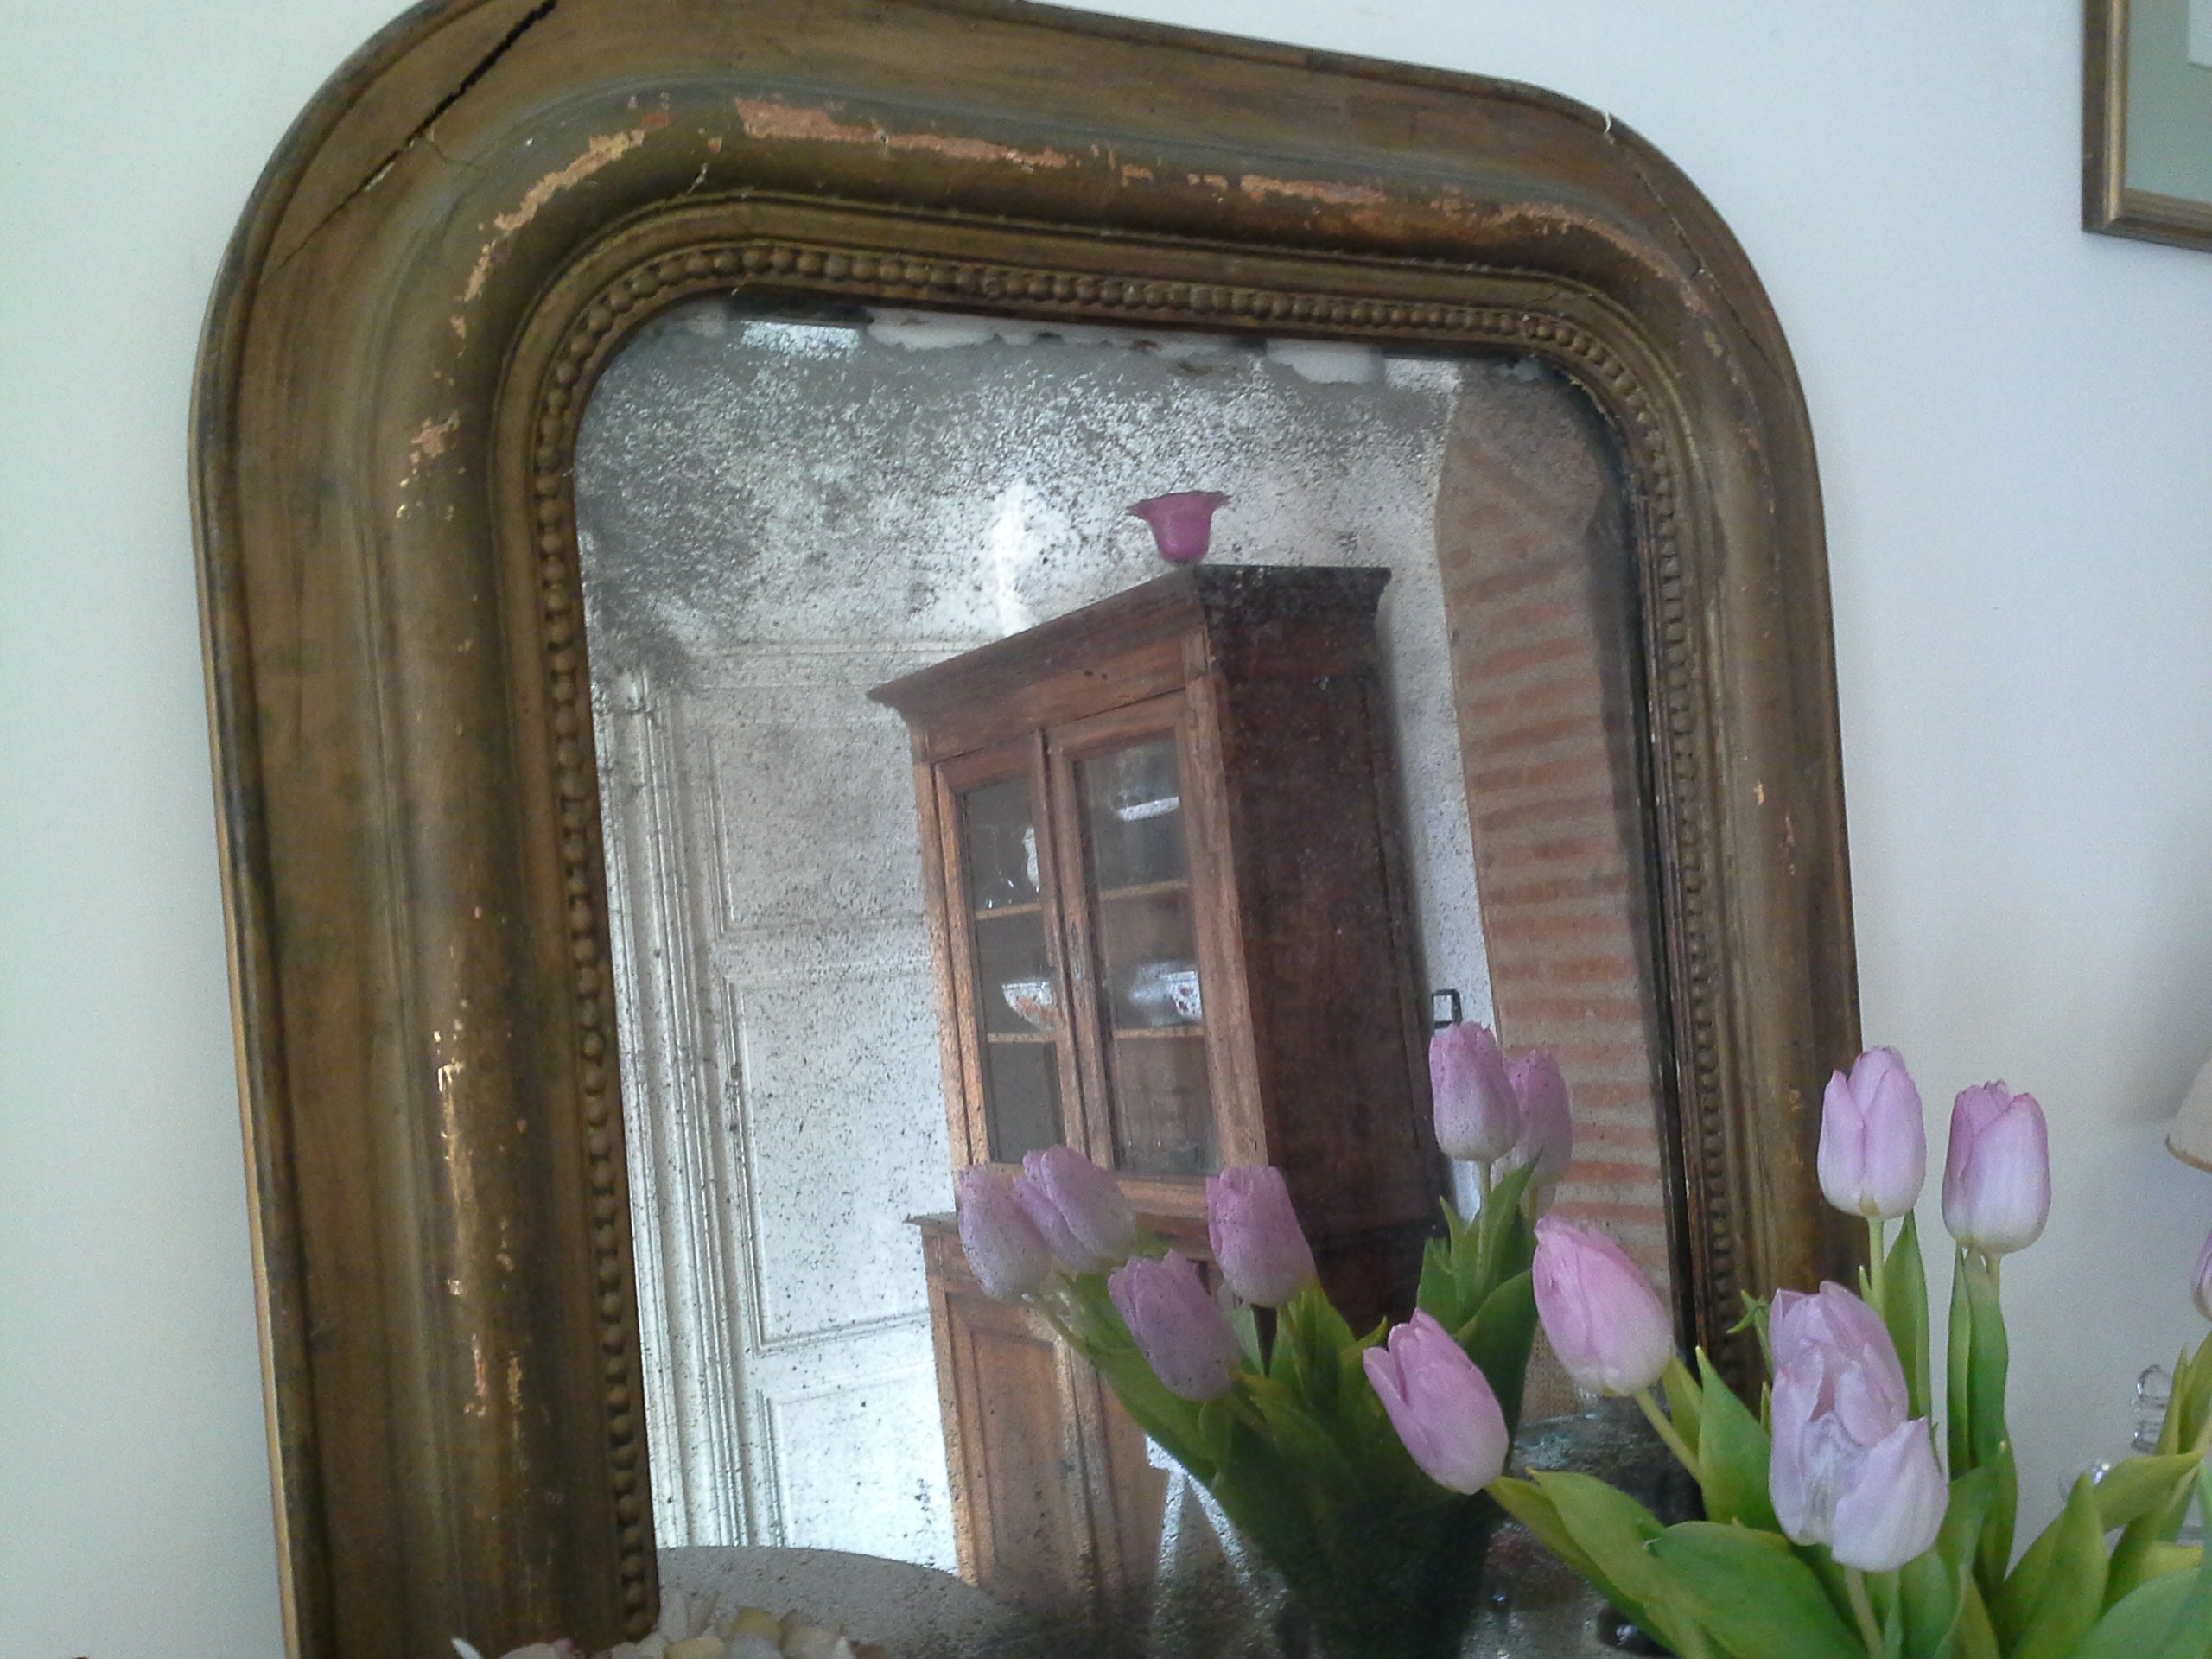 Miroir mon beau miroir - Dans ma maison, il y a...